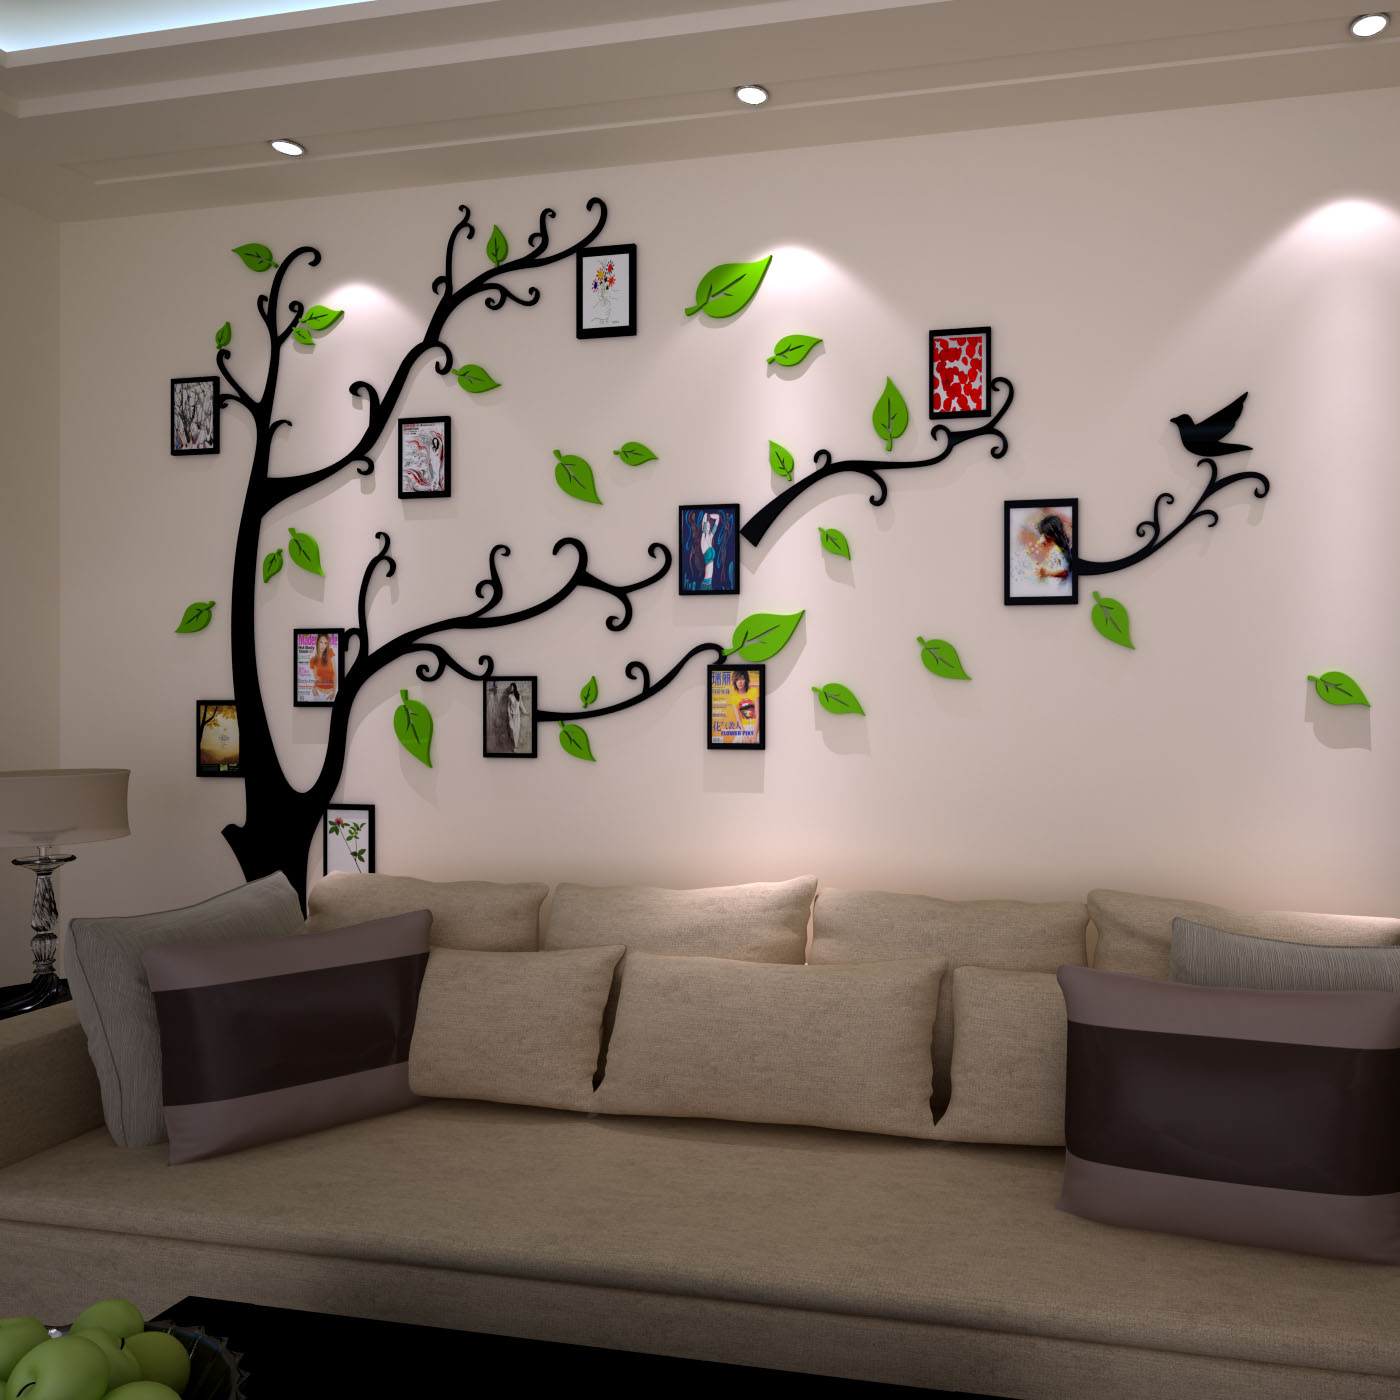 相框墙照片树3d水晶亚克力立体墙贴画客厅沙发电视背景墙创意装饰